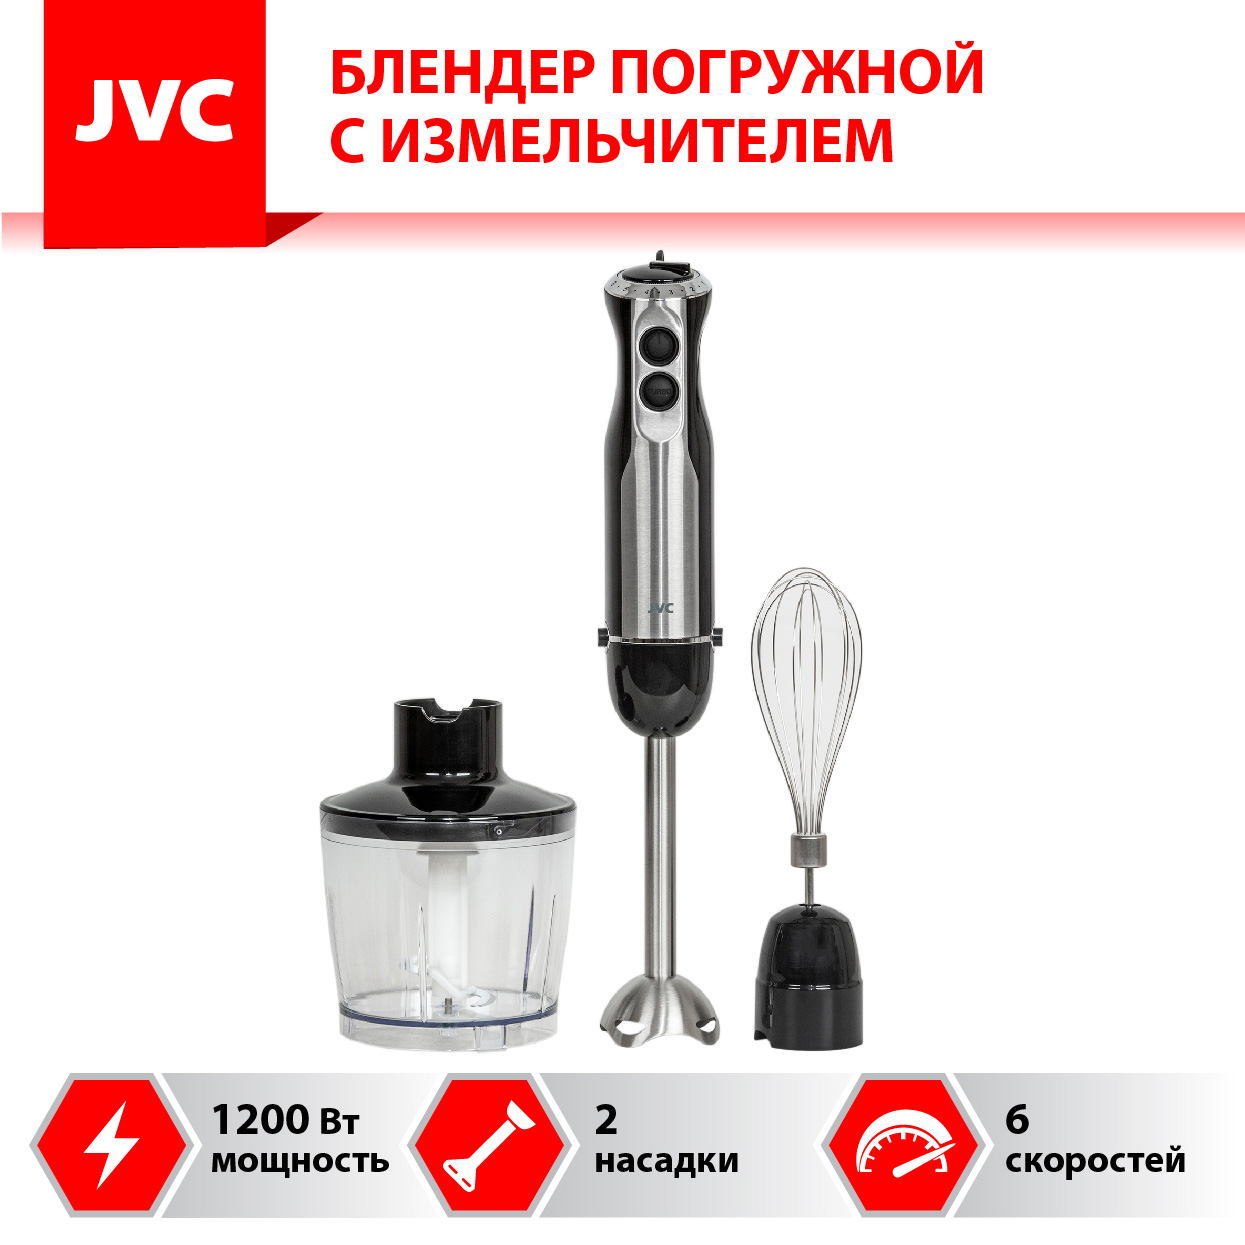 Блендер погружной JVC JK-HB5015 1.2 кВт, черный/серебристый